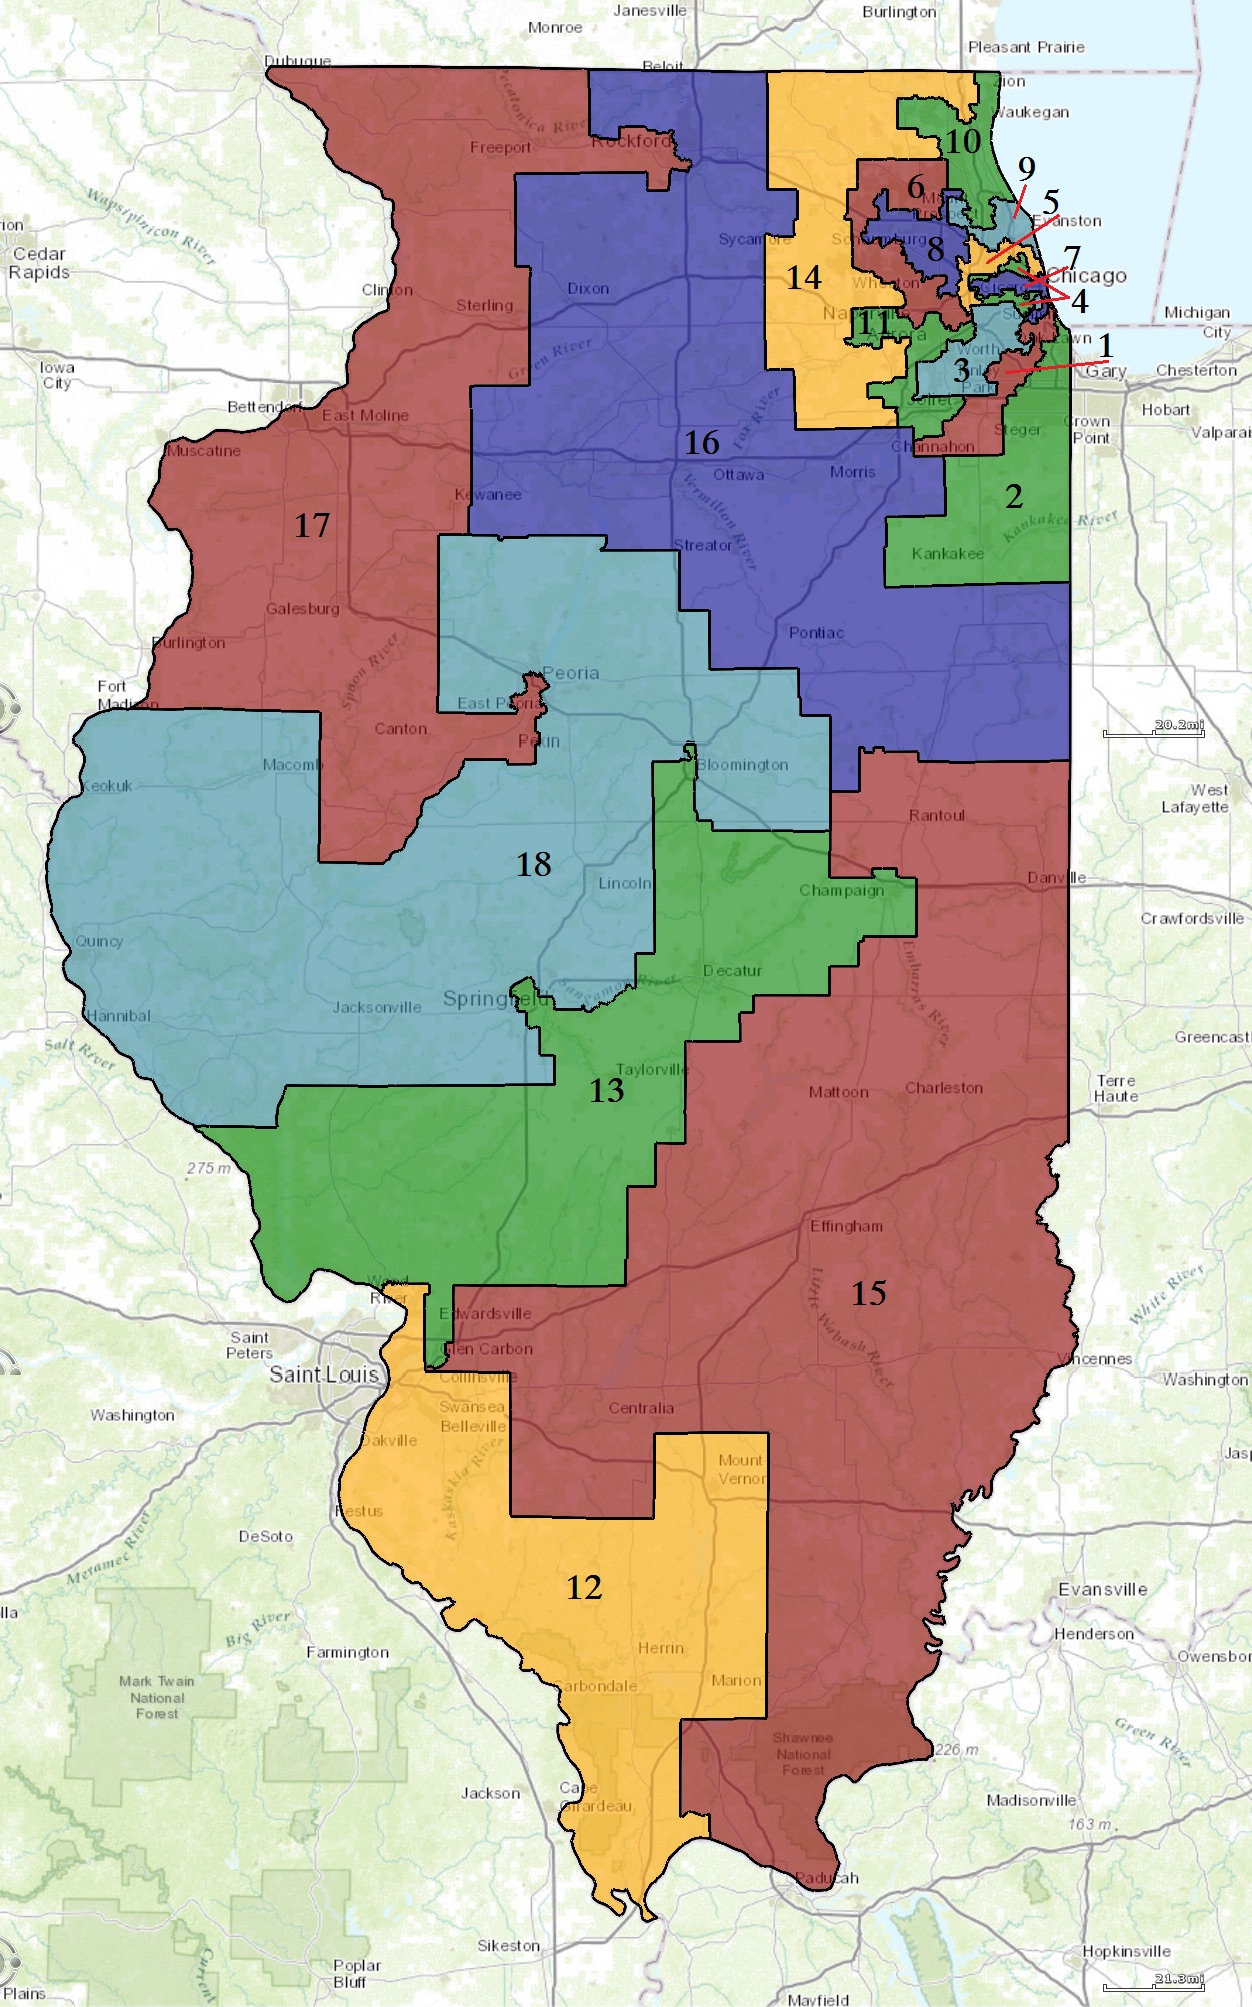 2013年迄今的伊利诺州美国国会选区分布图。